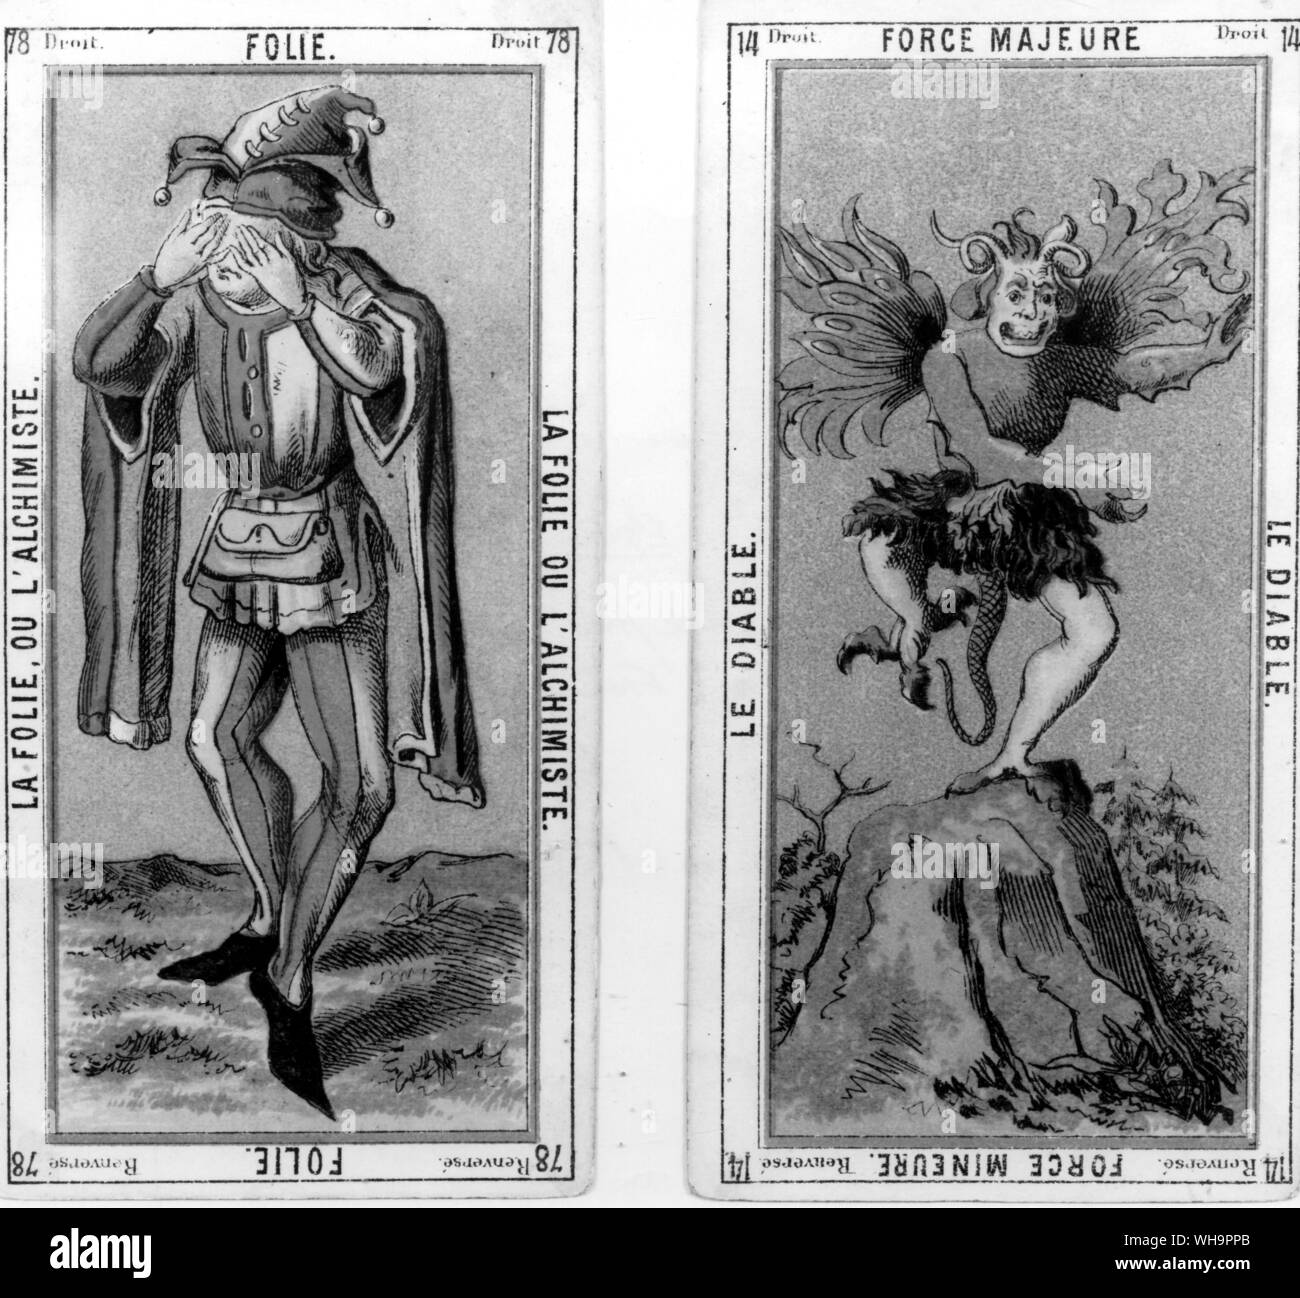 Version de l'imbécile - Alliette - La Folie ou l'Alchimiste (à gauche) et de Force Majeure (Le Diable) en couleur à la page 121 Banque D'Images